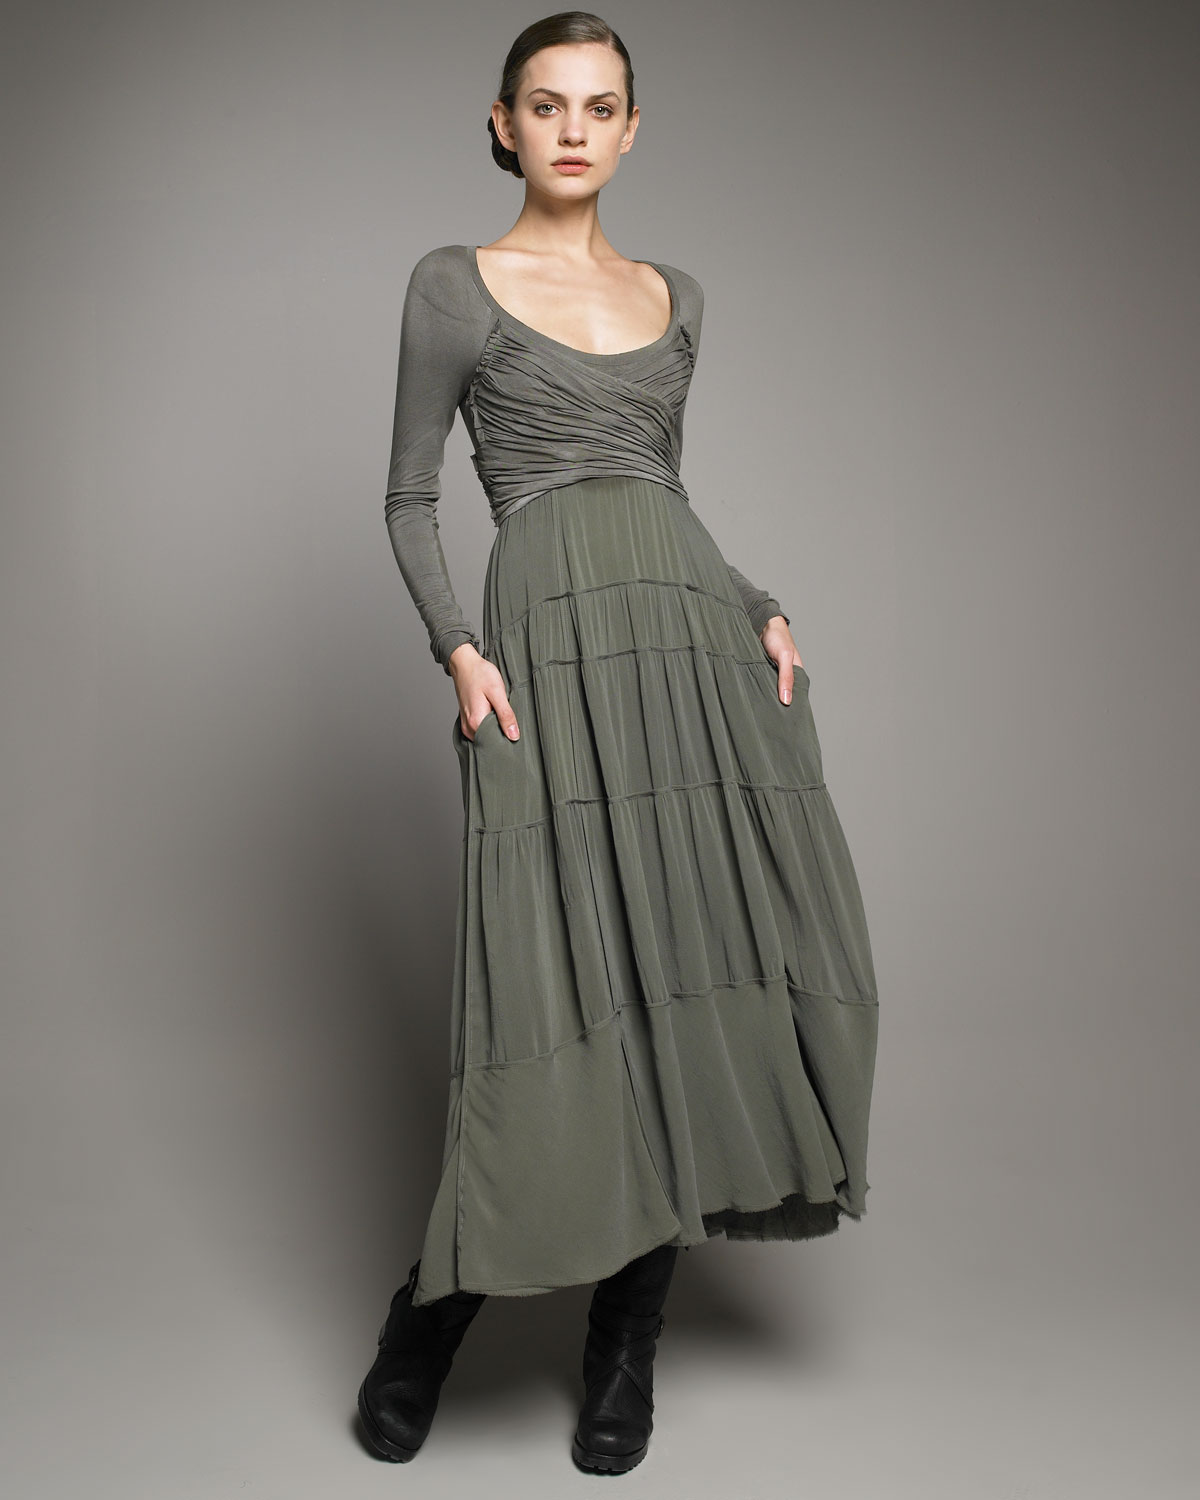 Lyst - Donna Karan Empire-waist Jersey Dress in Green